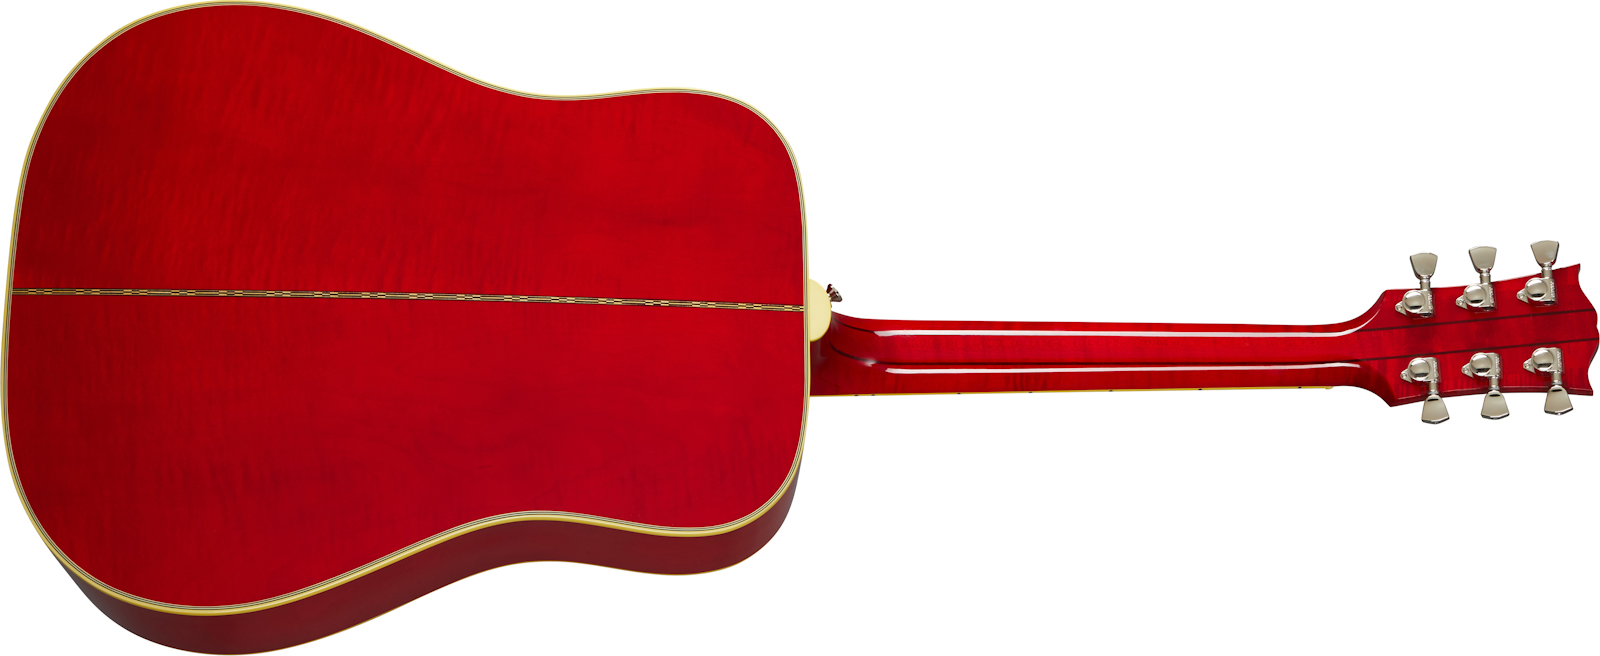 Gibson Dove Original 2020 Dreadnought Epicea Erable Rw - Antique Natural - Electro acoustic guitar - Variation 1